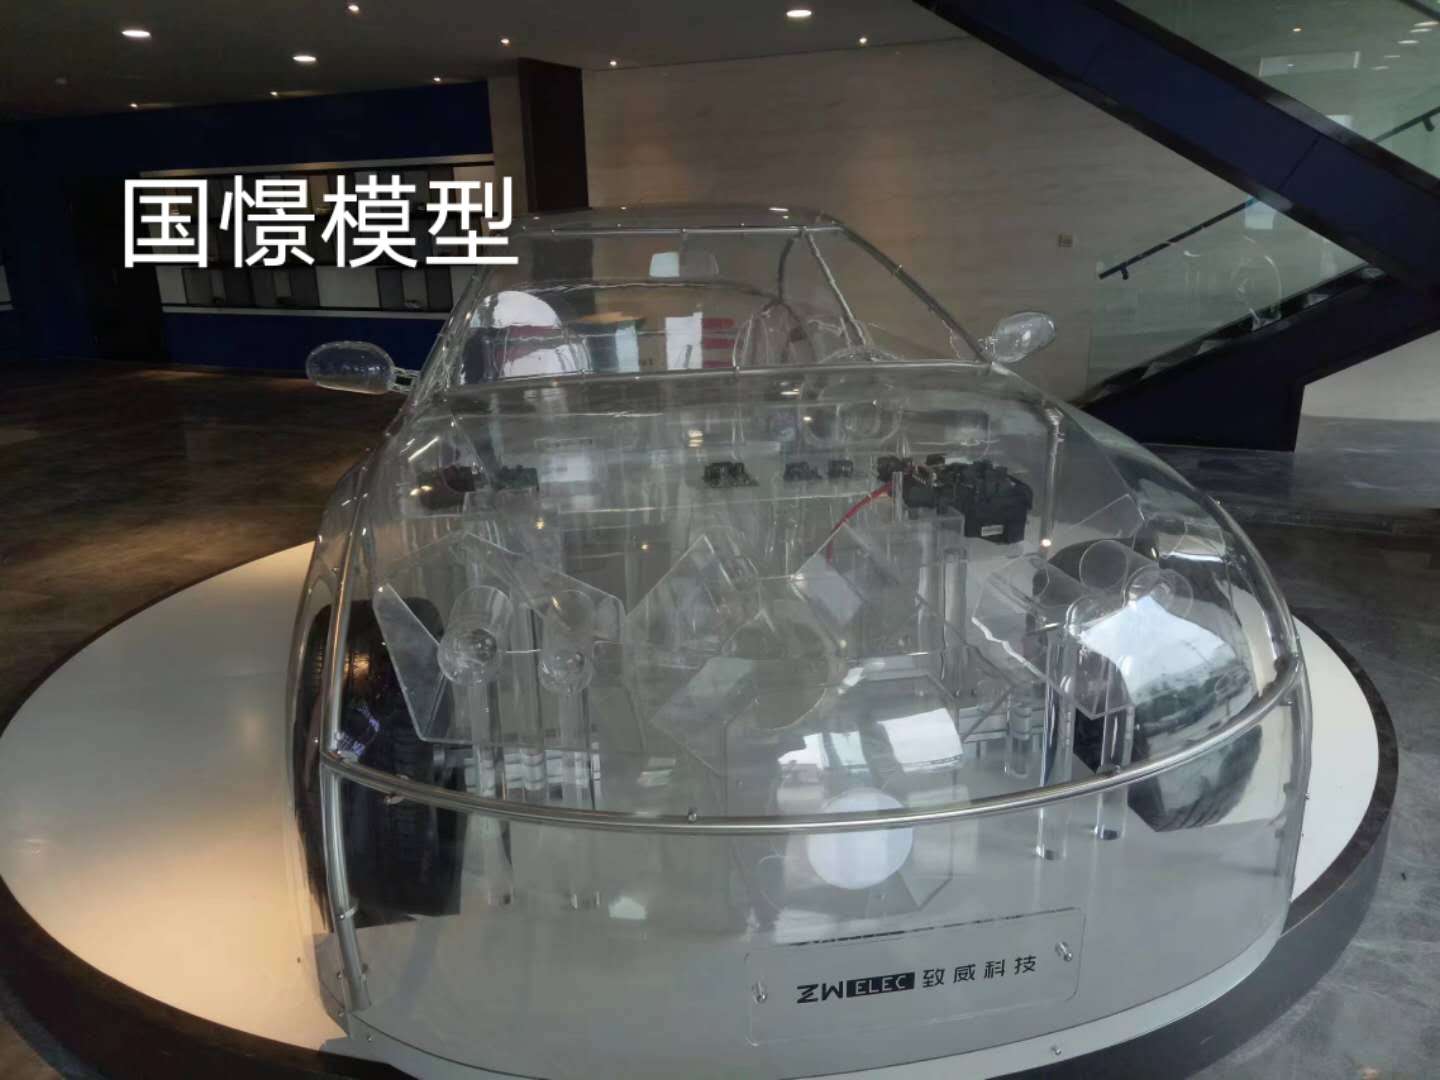 将乐县透明车模型